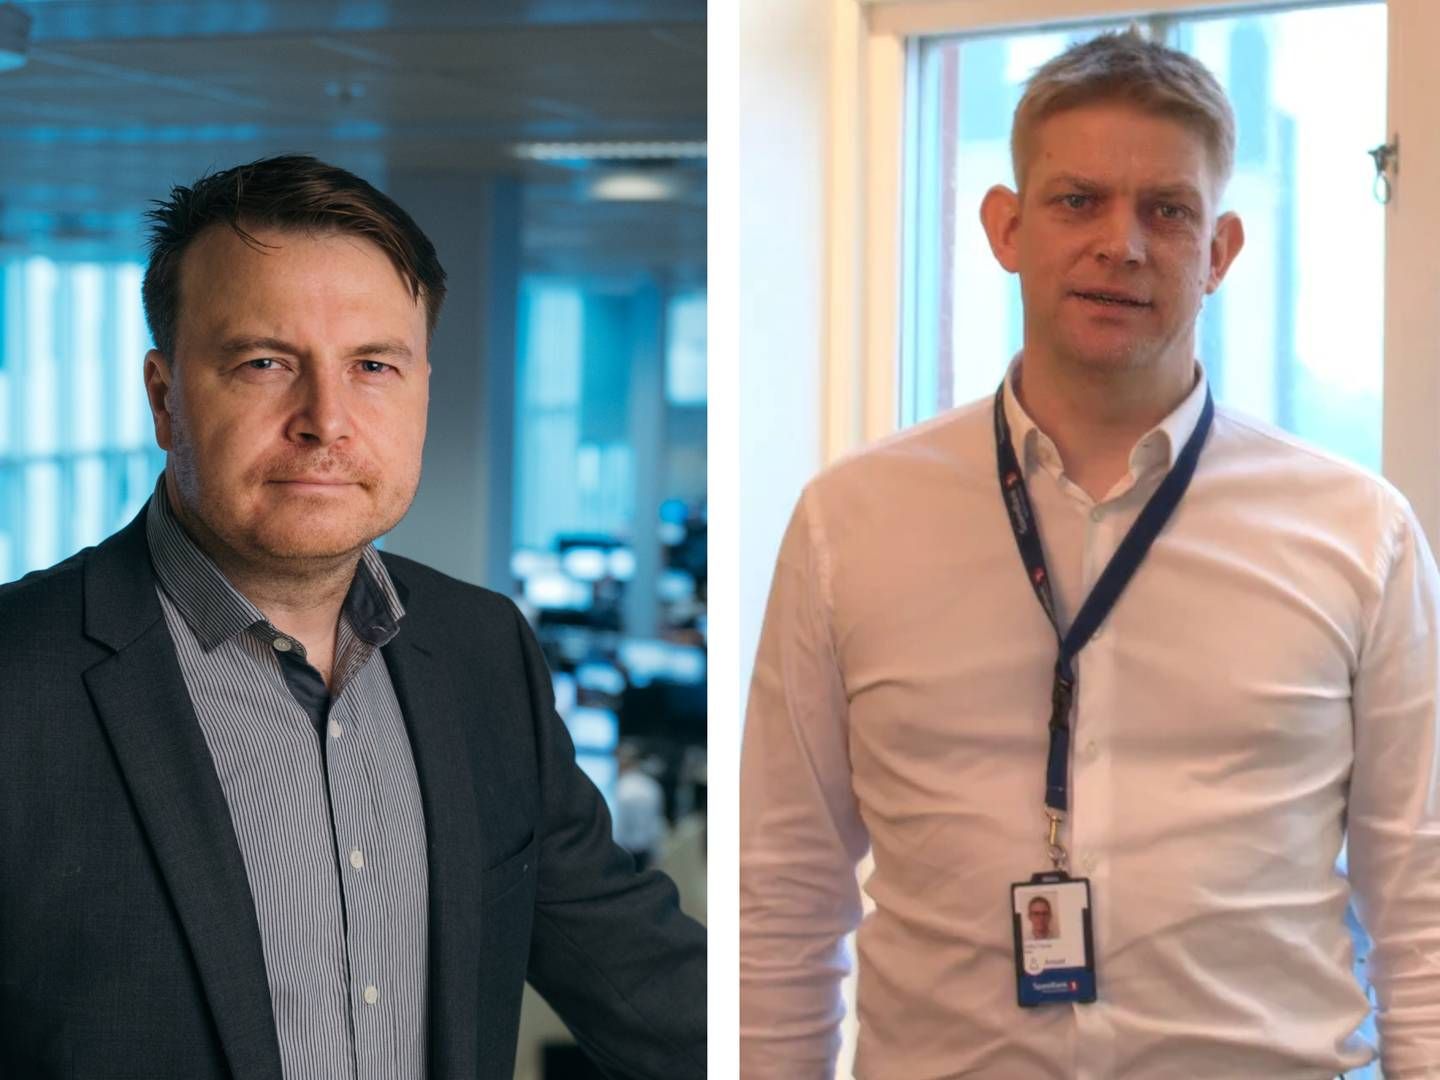 Fra venstre: Kommunikasjonsrådgiver i DNB, Vidar Korsberg Dalsbø og sjef for HR i Sparebank 1 Nord-Norge, Petter Gjerpe.